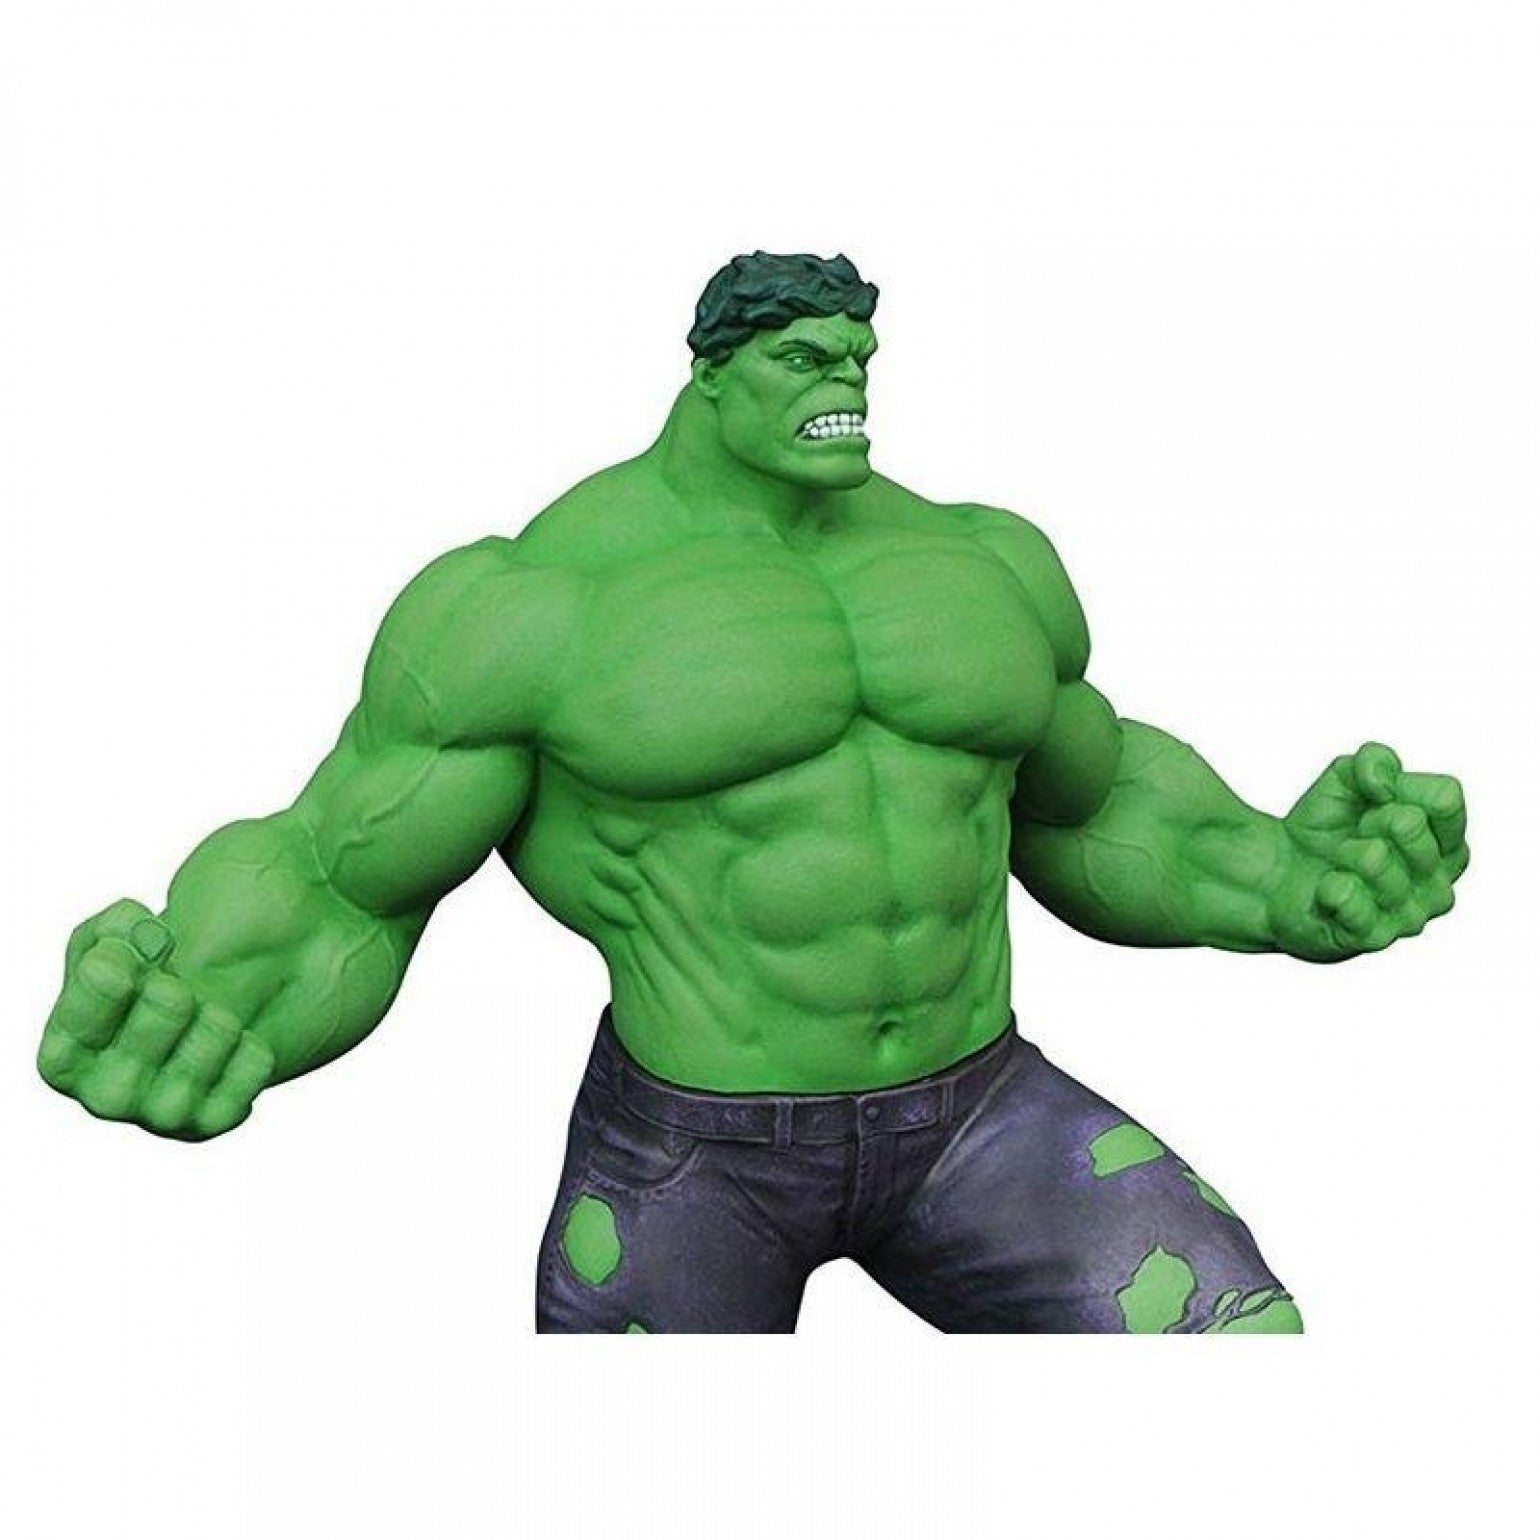 Marvel - Incredible Hulk PVC Gallery Figure